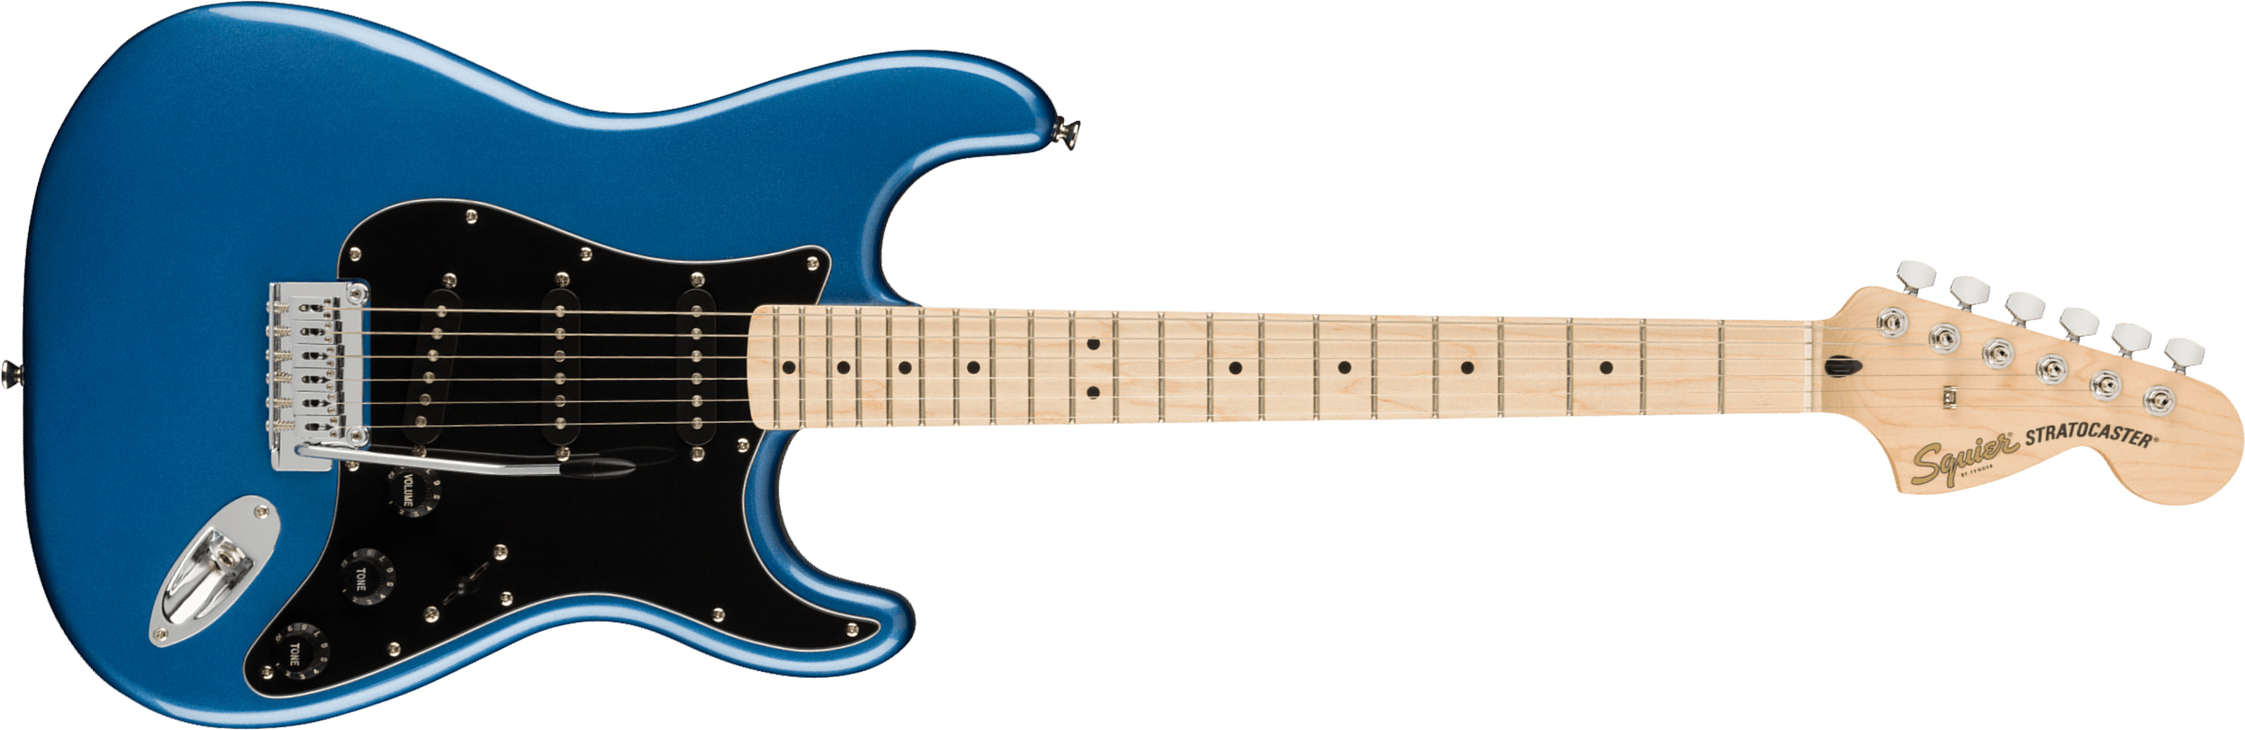 Squier Strat Affinity 2021 Sss Trem Mn - Lake Placid Blue - Guitarra eléctrica con forma de str. - Main picture